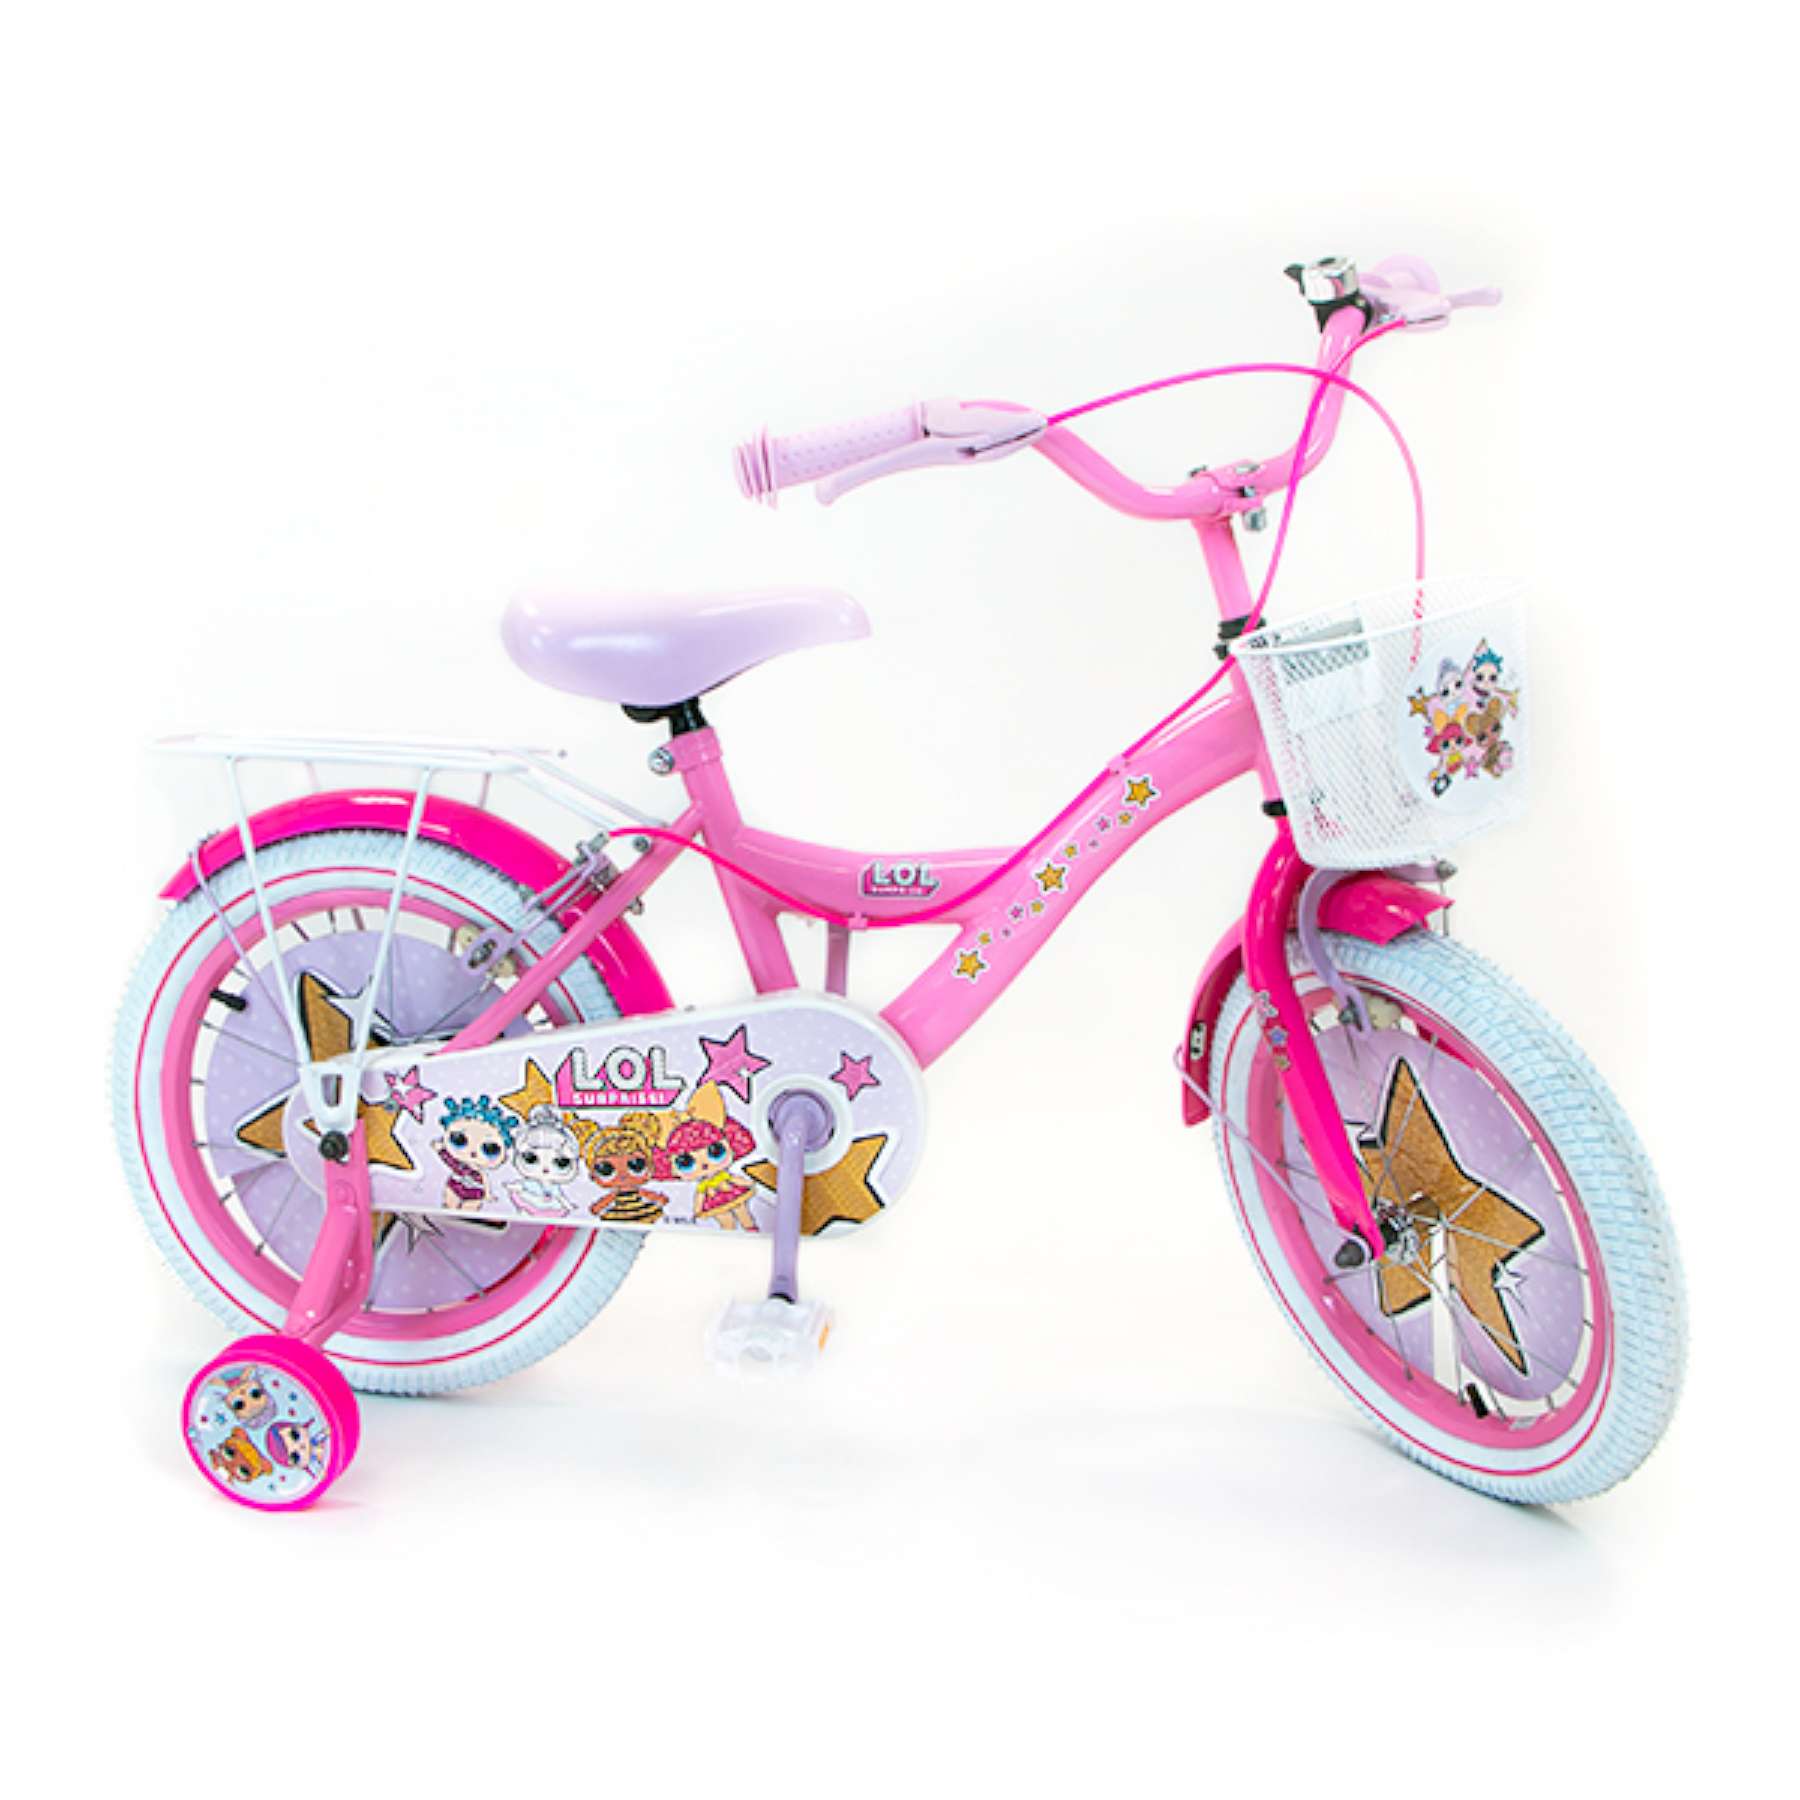 LOL Surprise kids bike 16-inch wheel single speed pink 